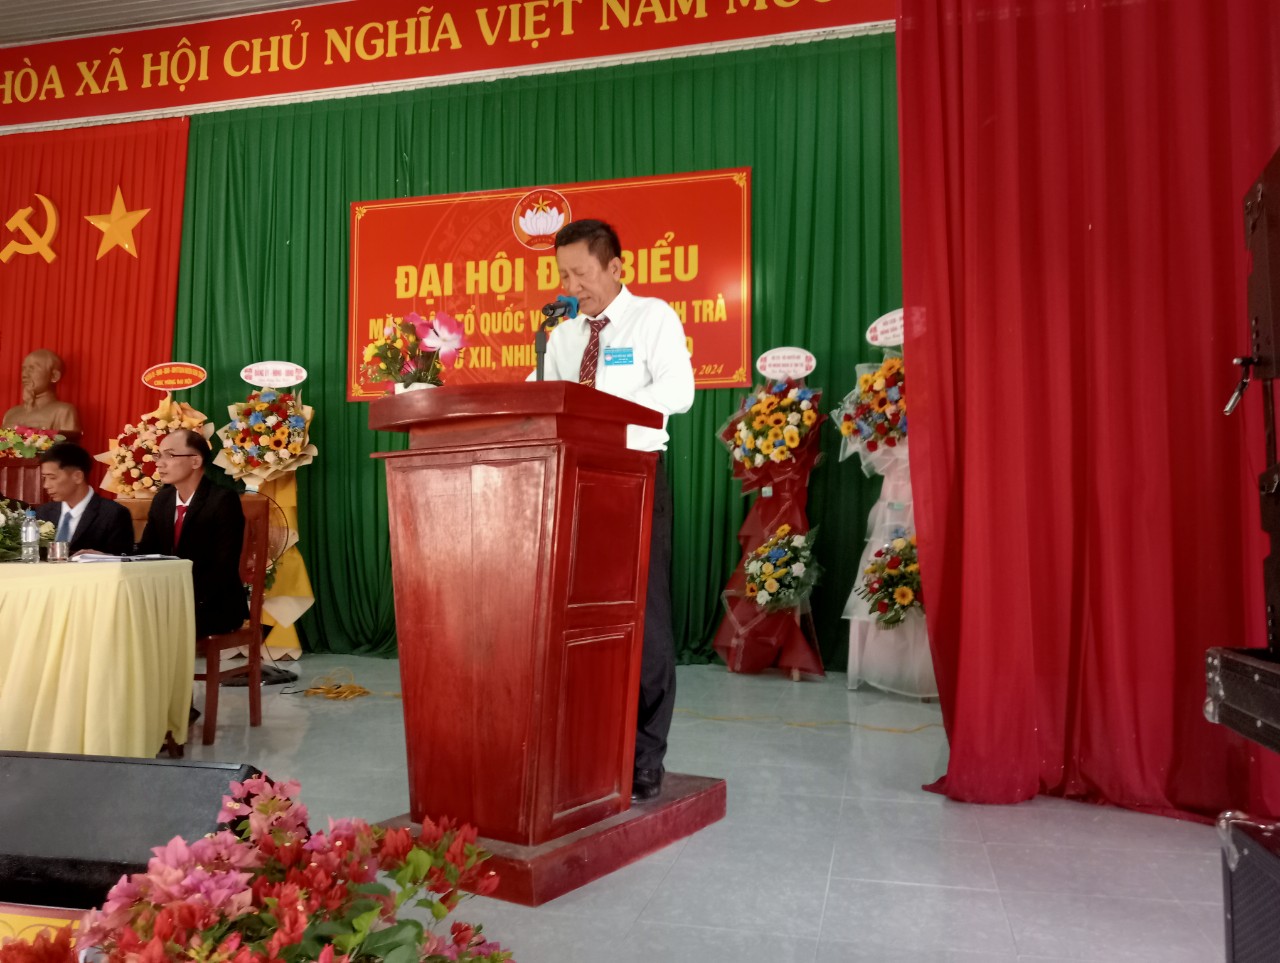 Đồng Chí Huỳnh Văn Tịnh, Huyện ủy viên - Phó Chủ tịch UBMTTQVN xã phát biểu tại Đại hội